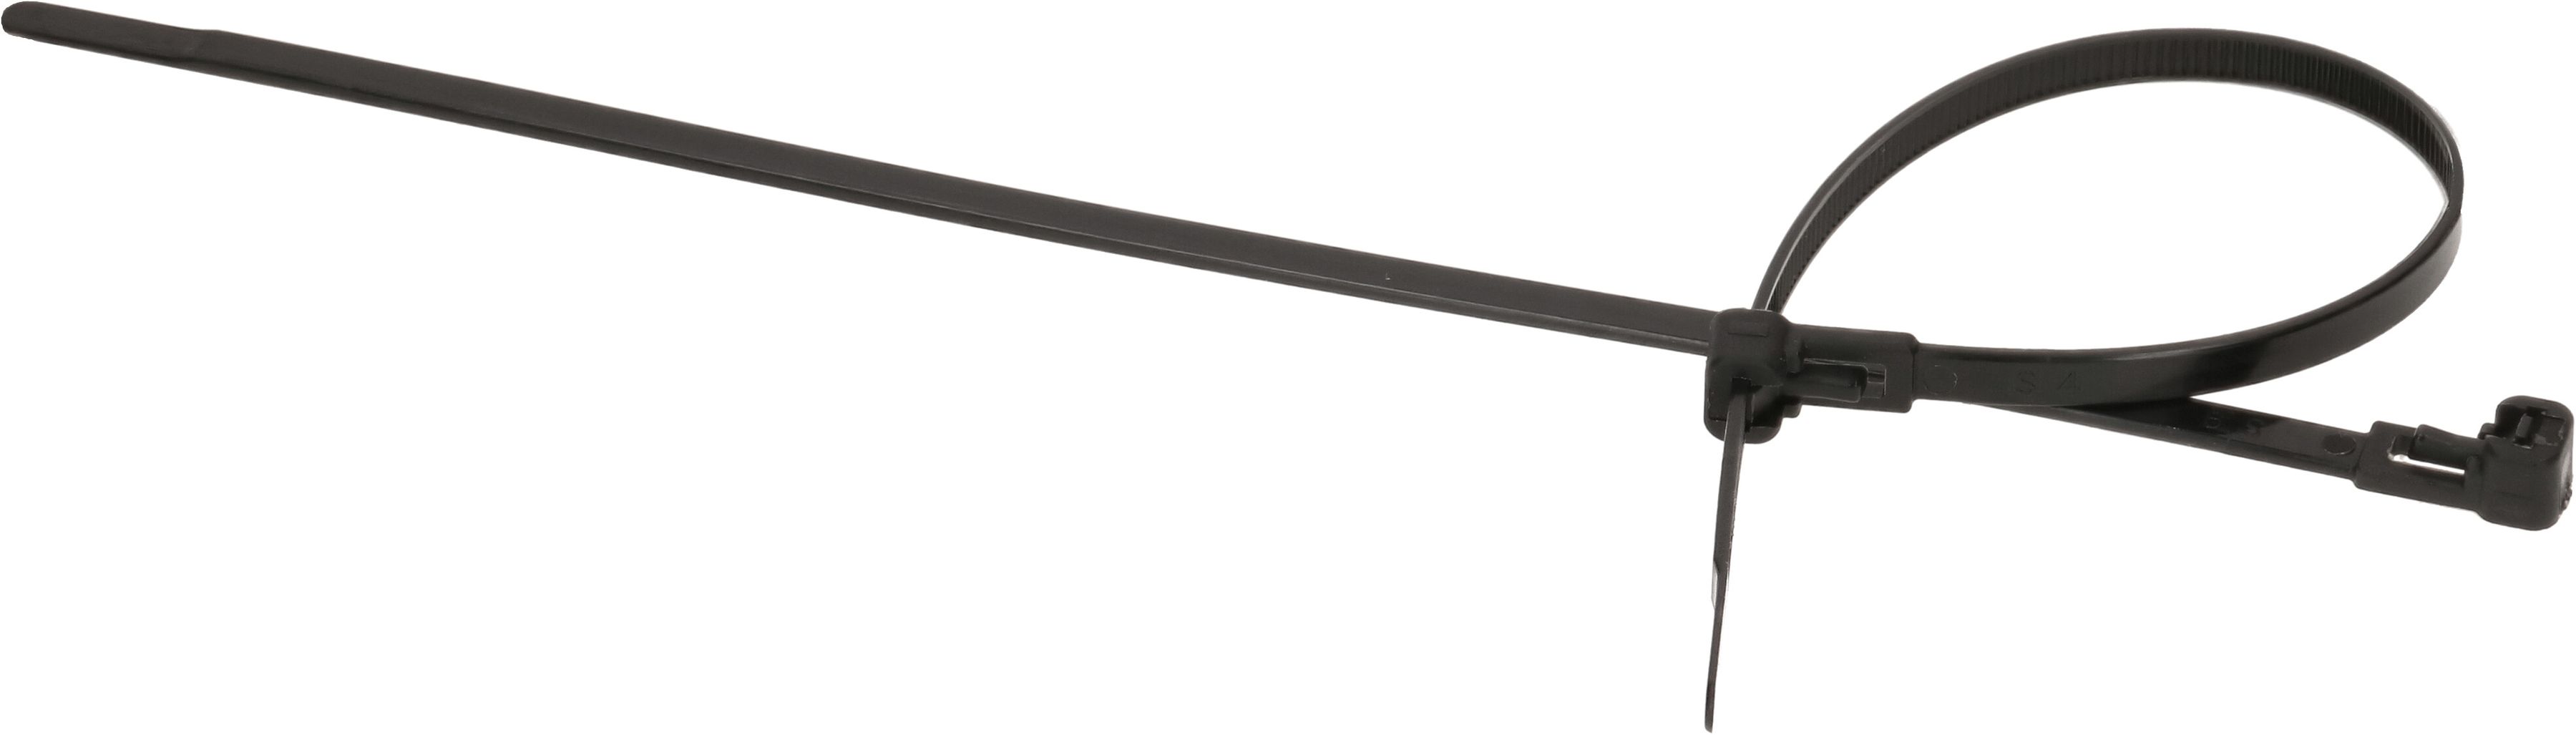 attache câbles redissolvable 4.6x200mm noir / 50 pièces